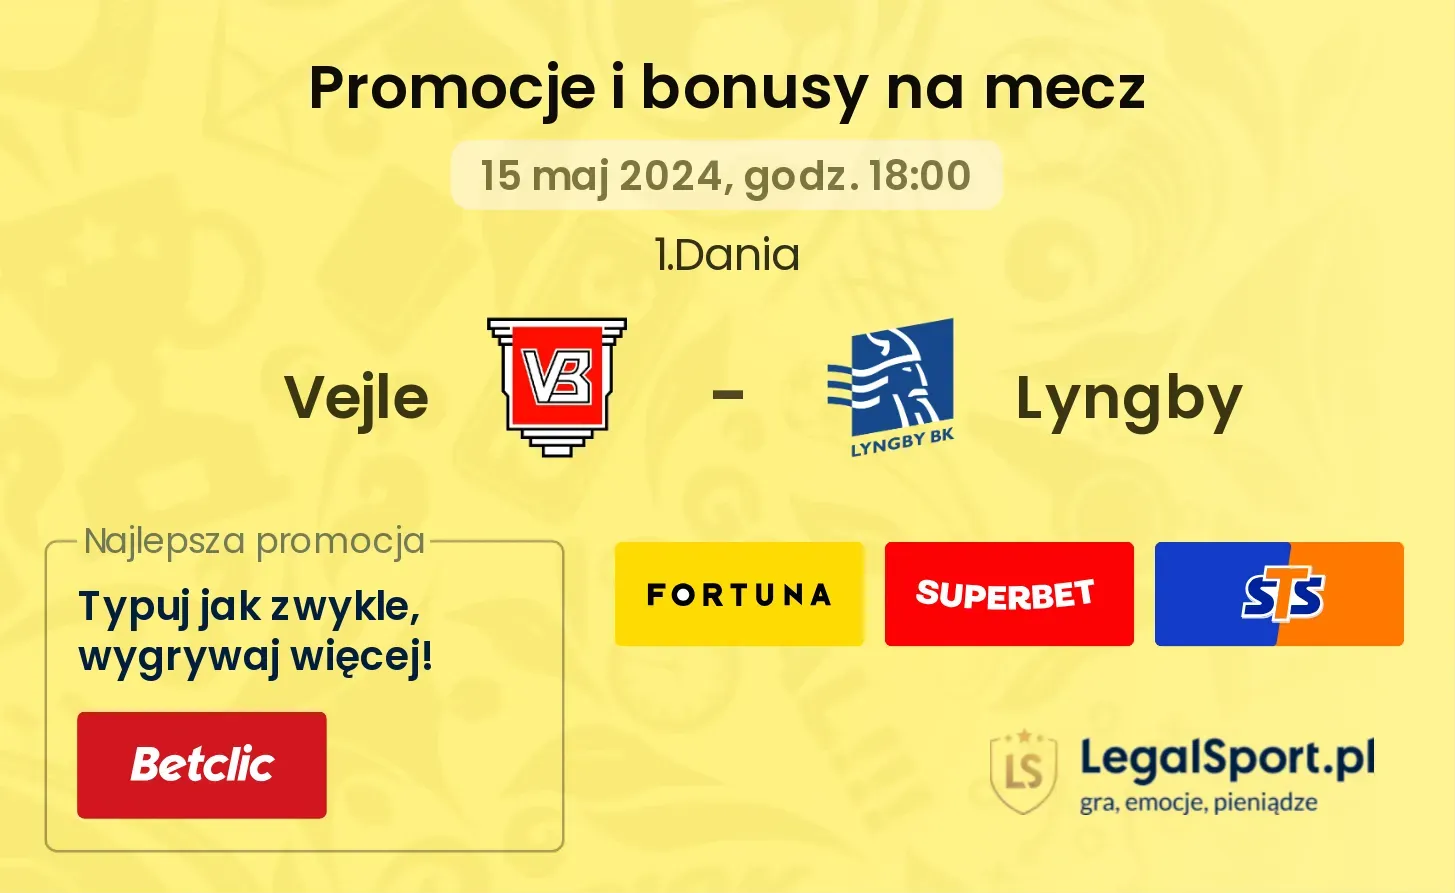 Vejle - Lyngby promocje bonusy na mecz